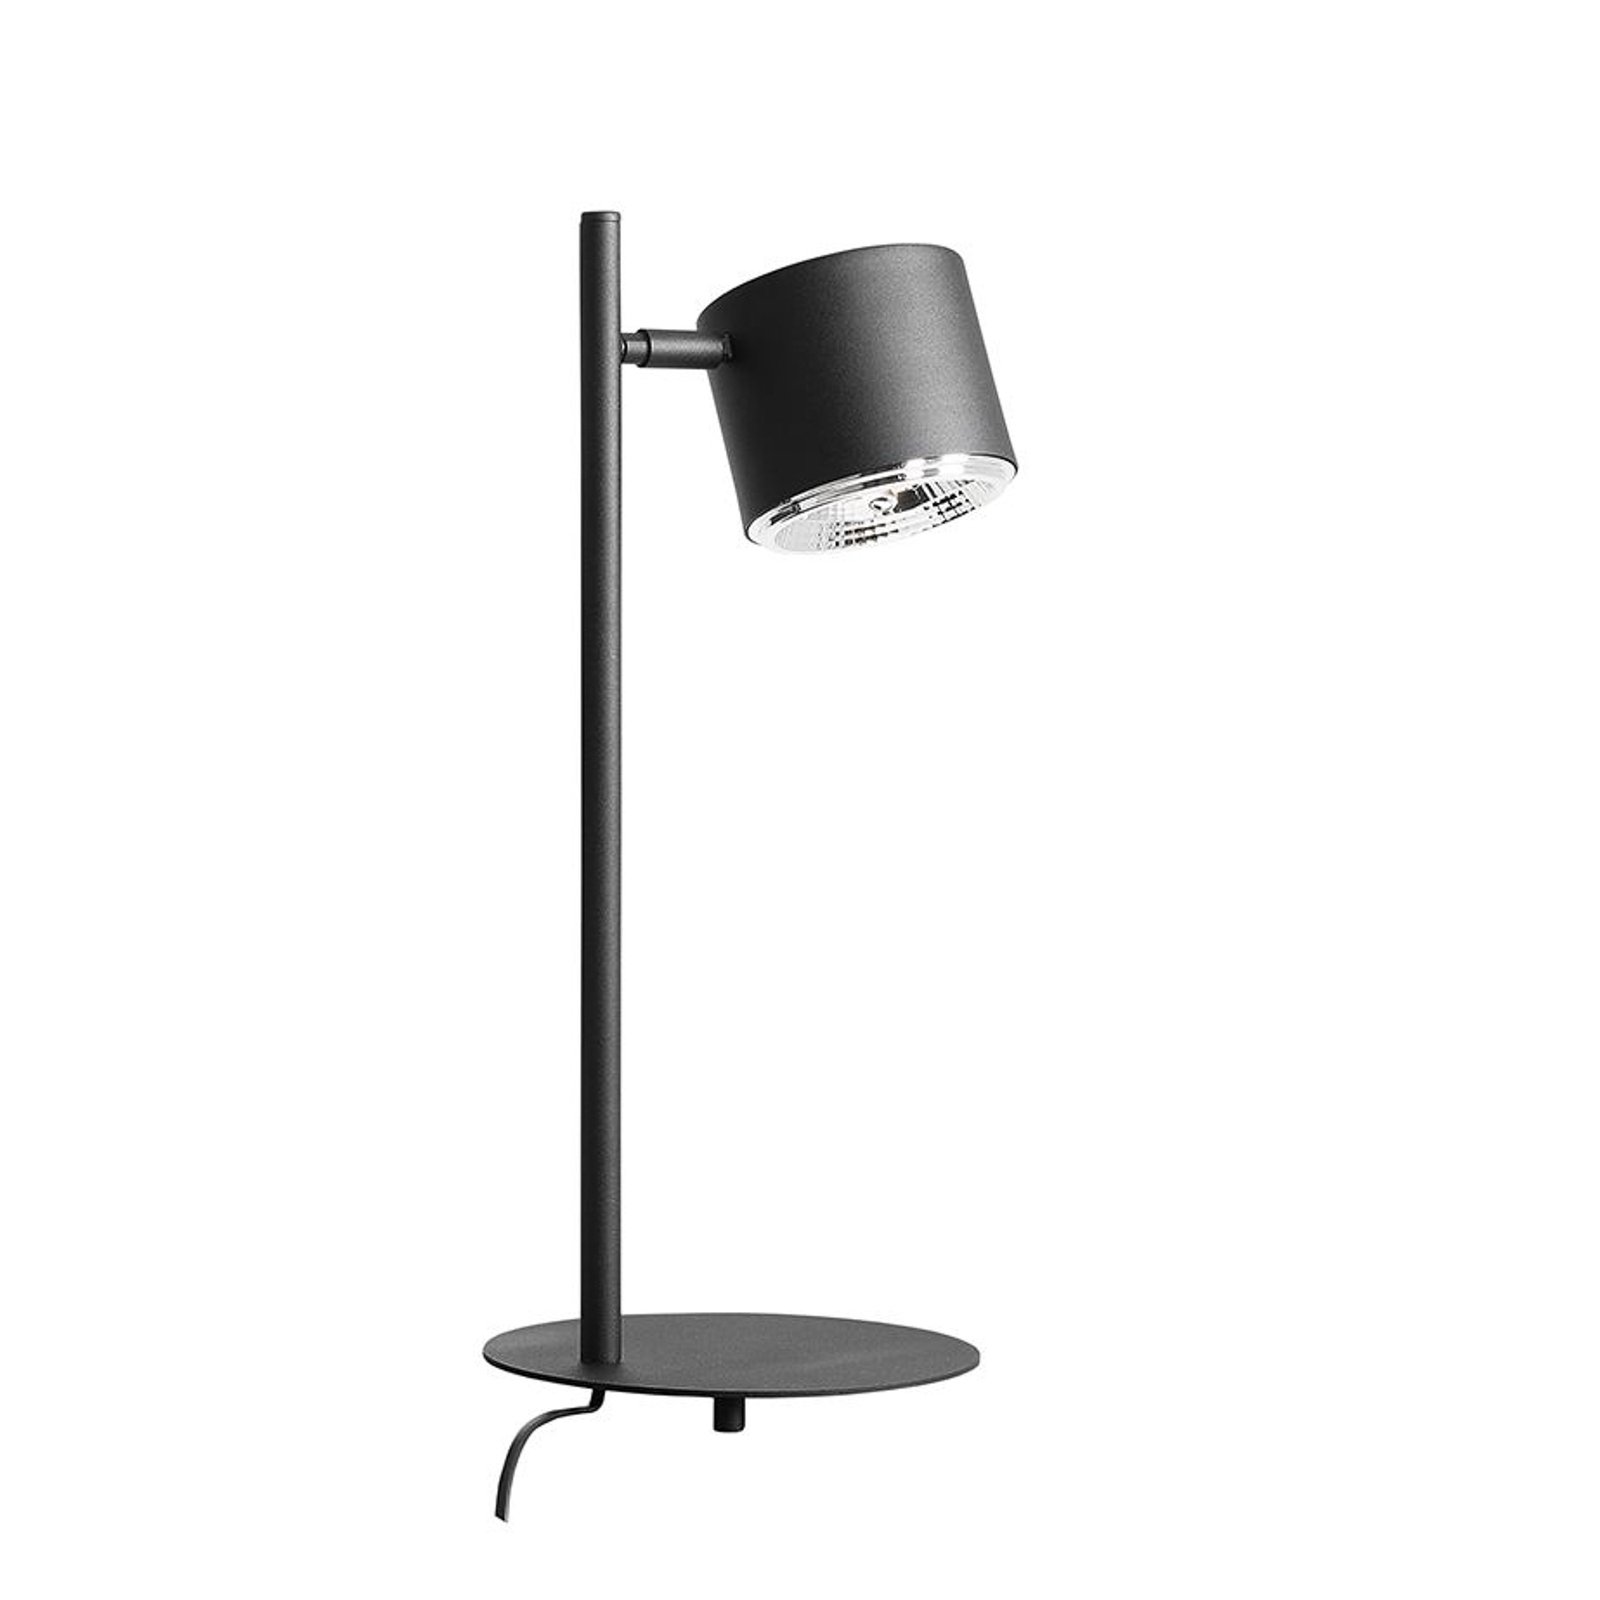 Bot bordlampe, svart bevegelig lampehode